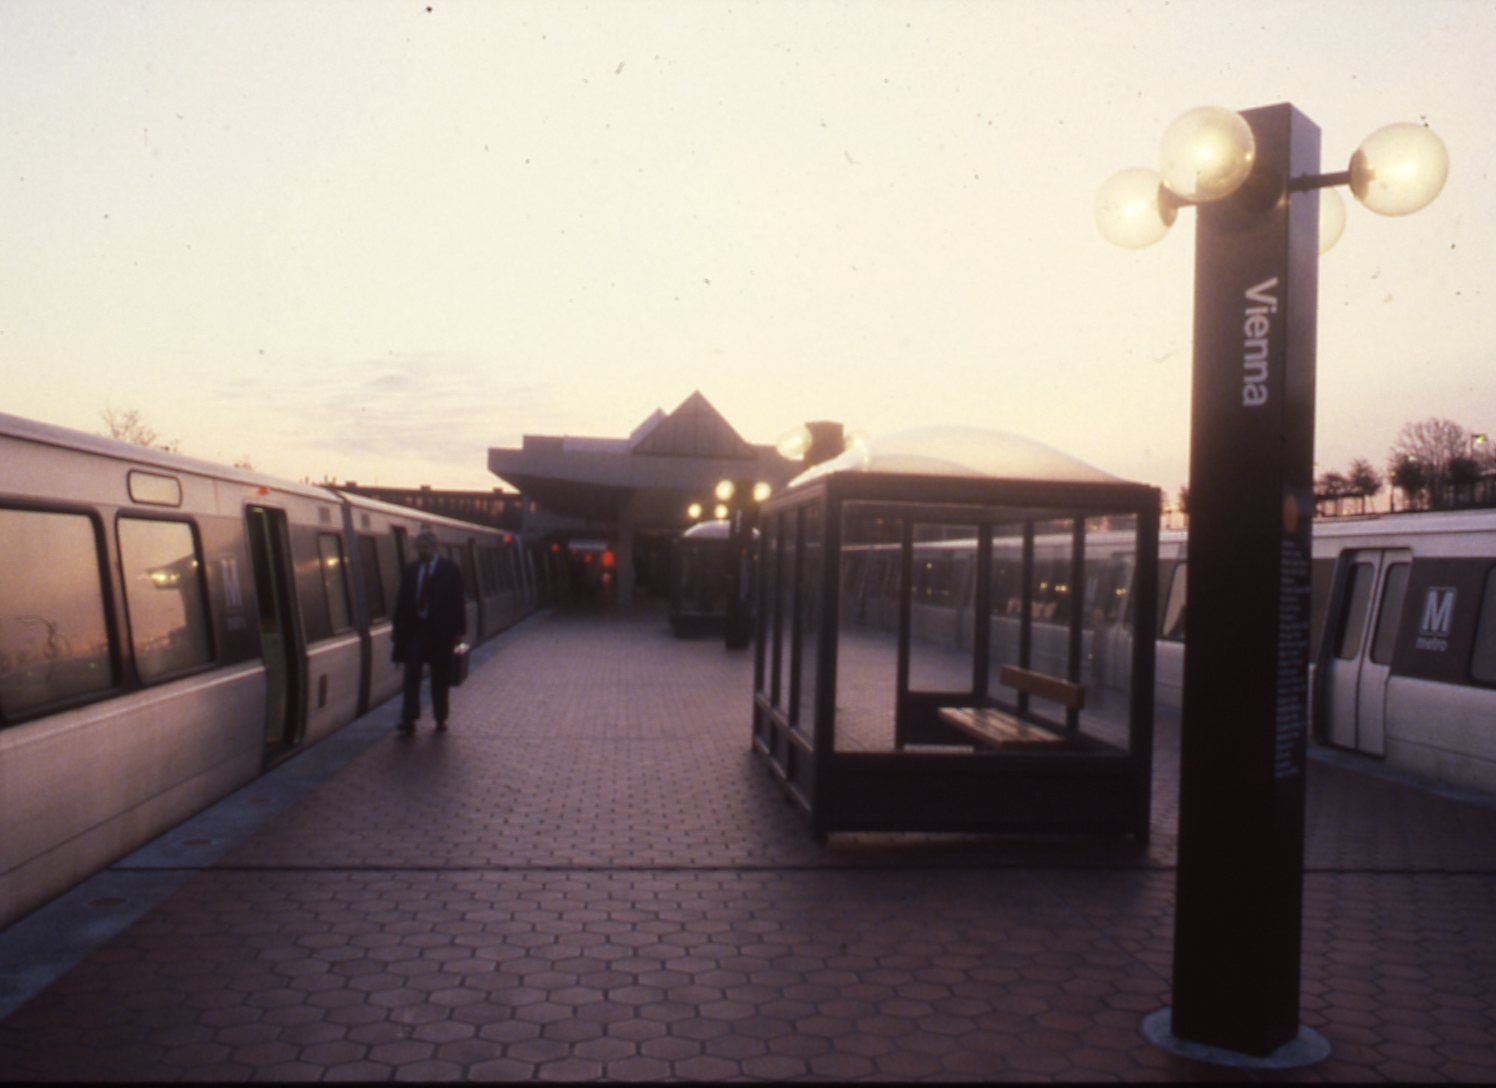 Vienna Station - March 1989